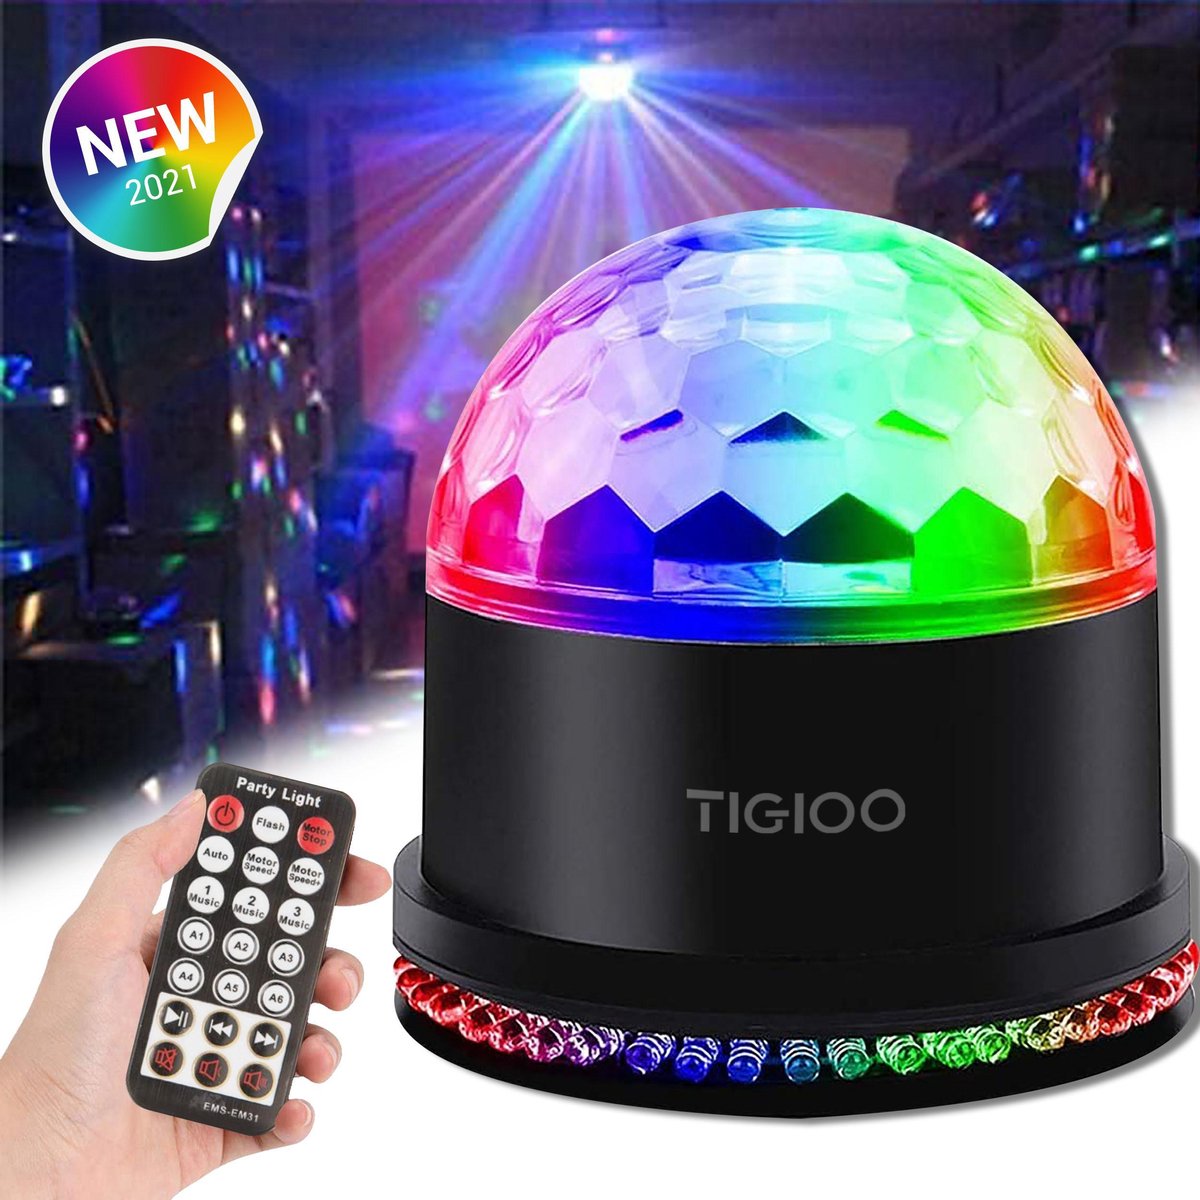 TIGIOO Discolamp Roterende LED Discolamp met Afstandsbediening en Muziekgestuurd - Kinderen/Volwassenen